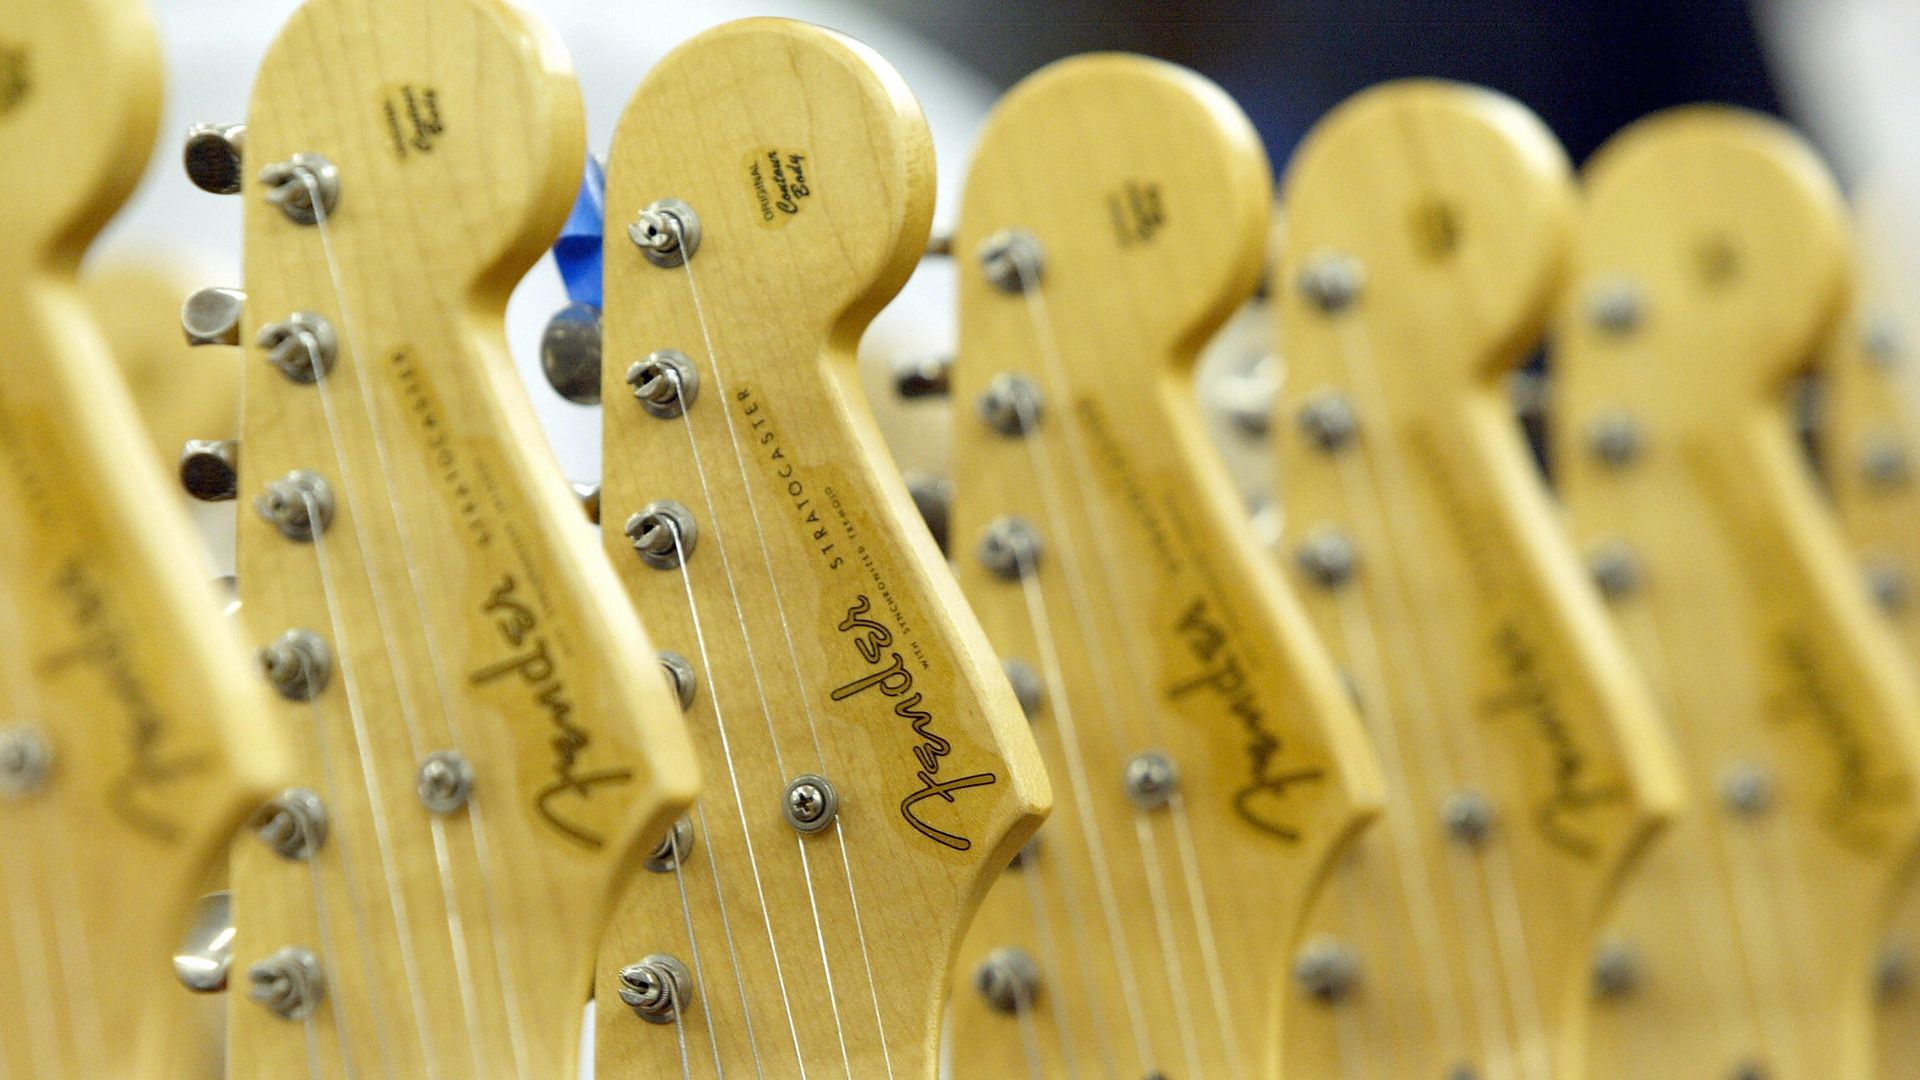 Fender Stratocaster guitars